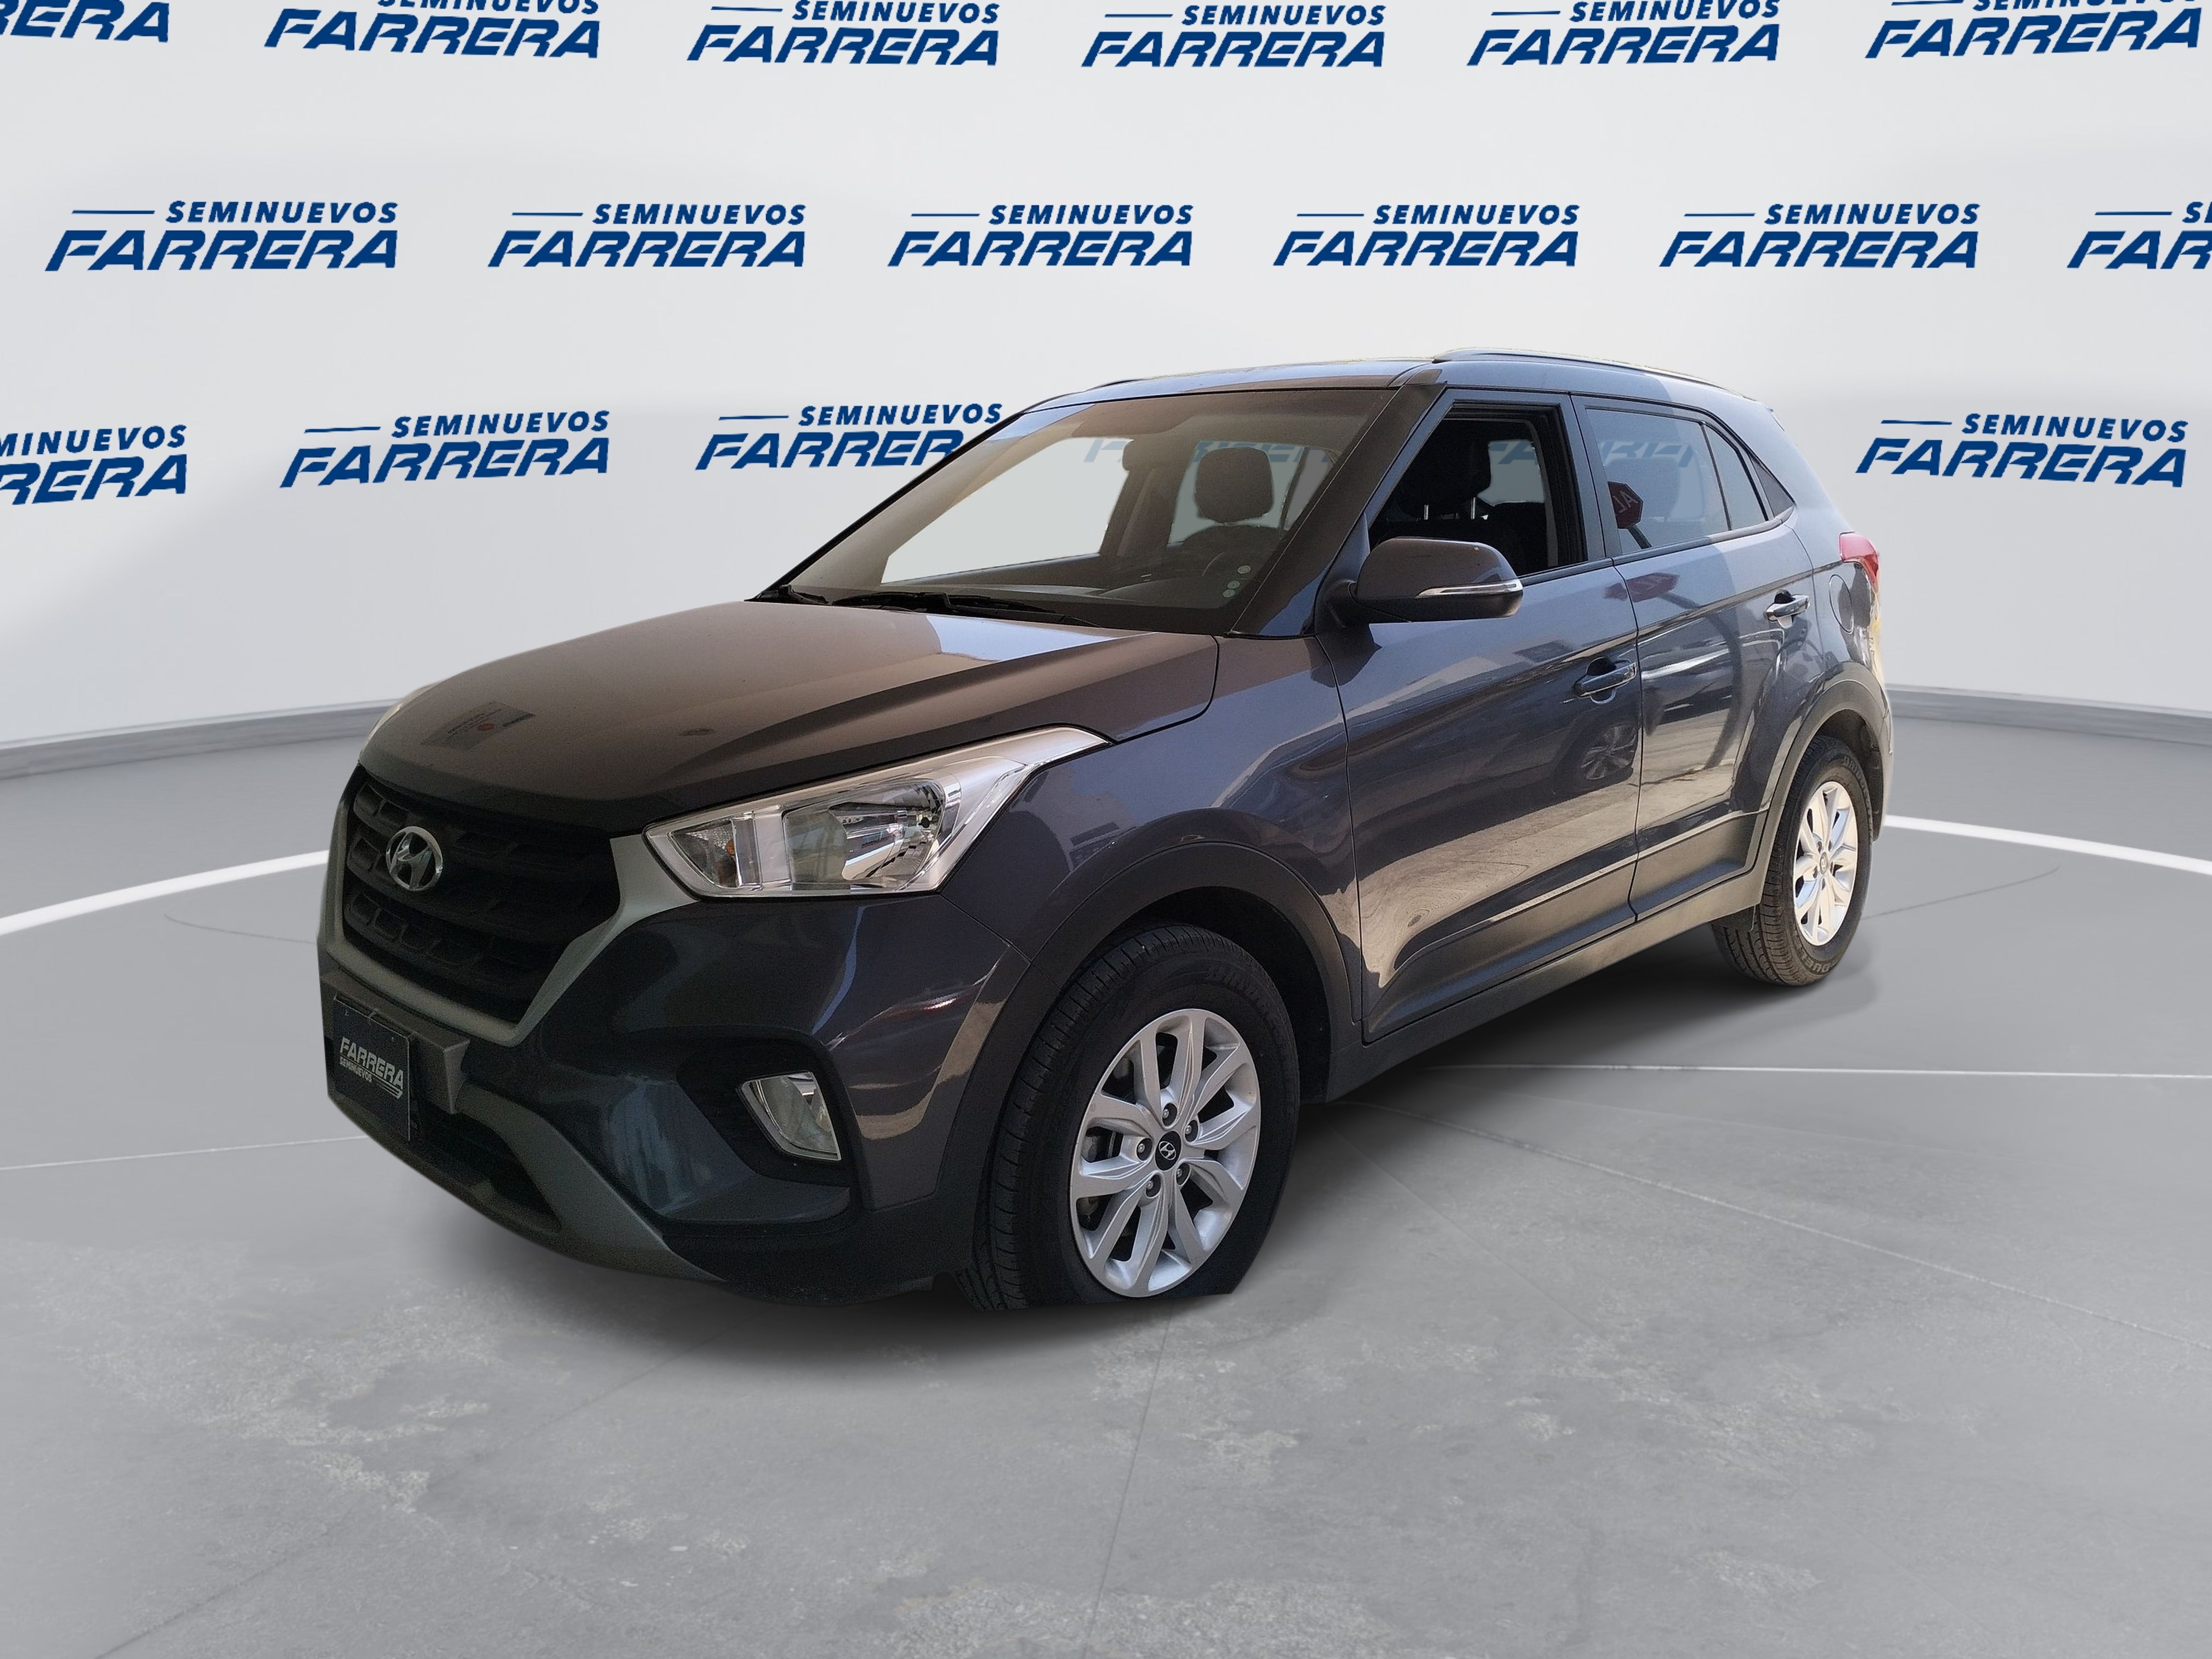 2019 Hyundai Creta 1.6 Gls Premium At